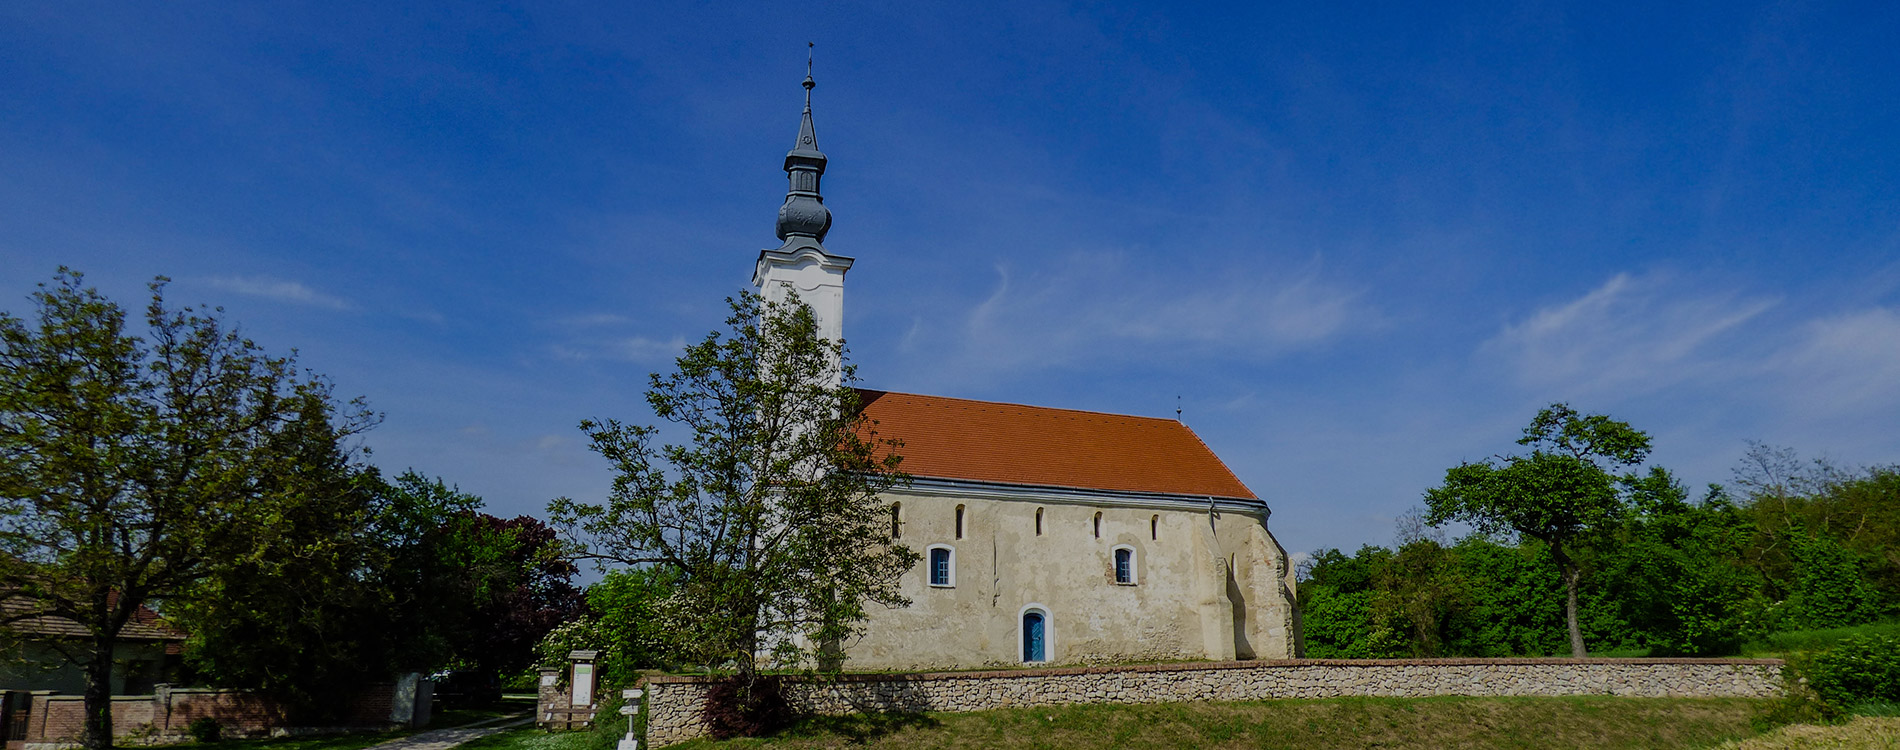 Túrony: Árpád-kori templom